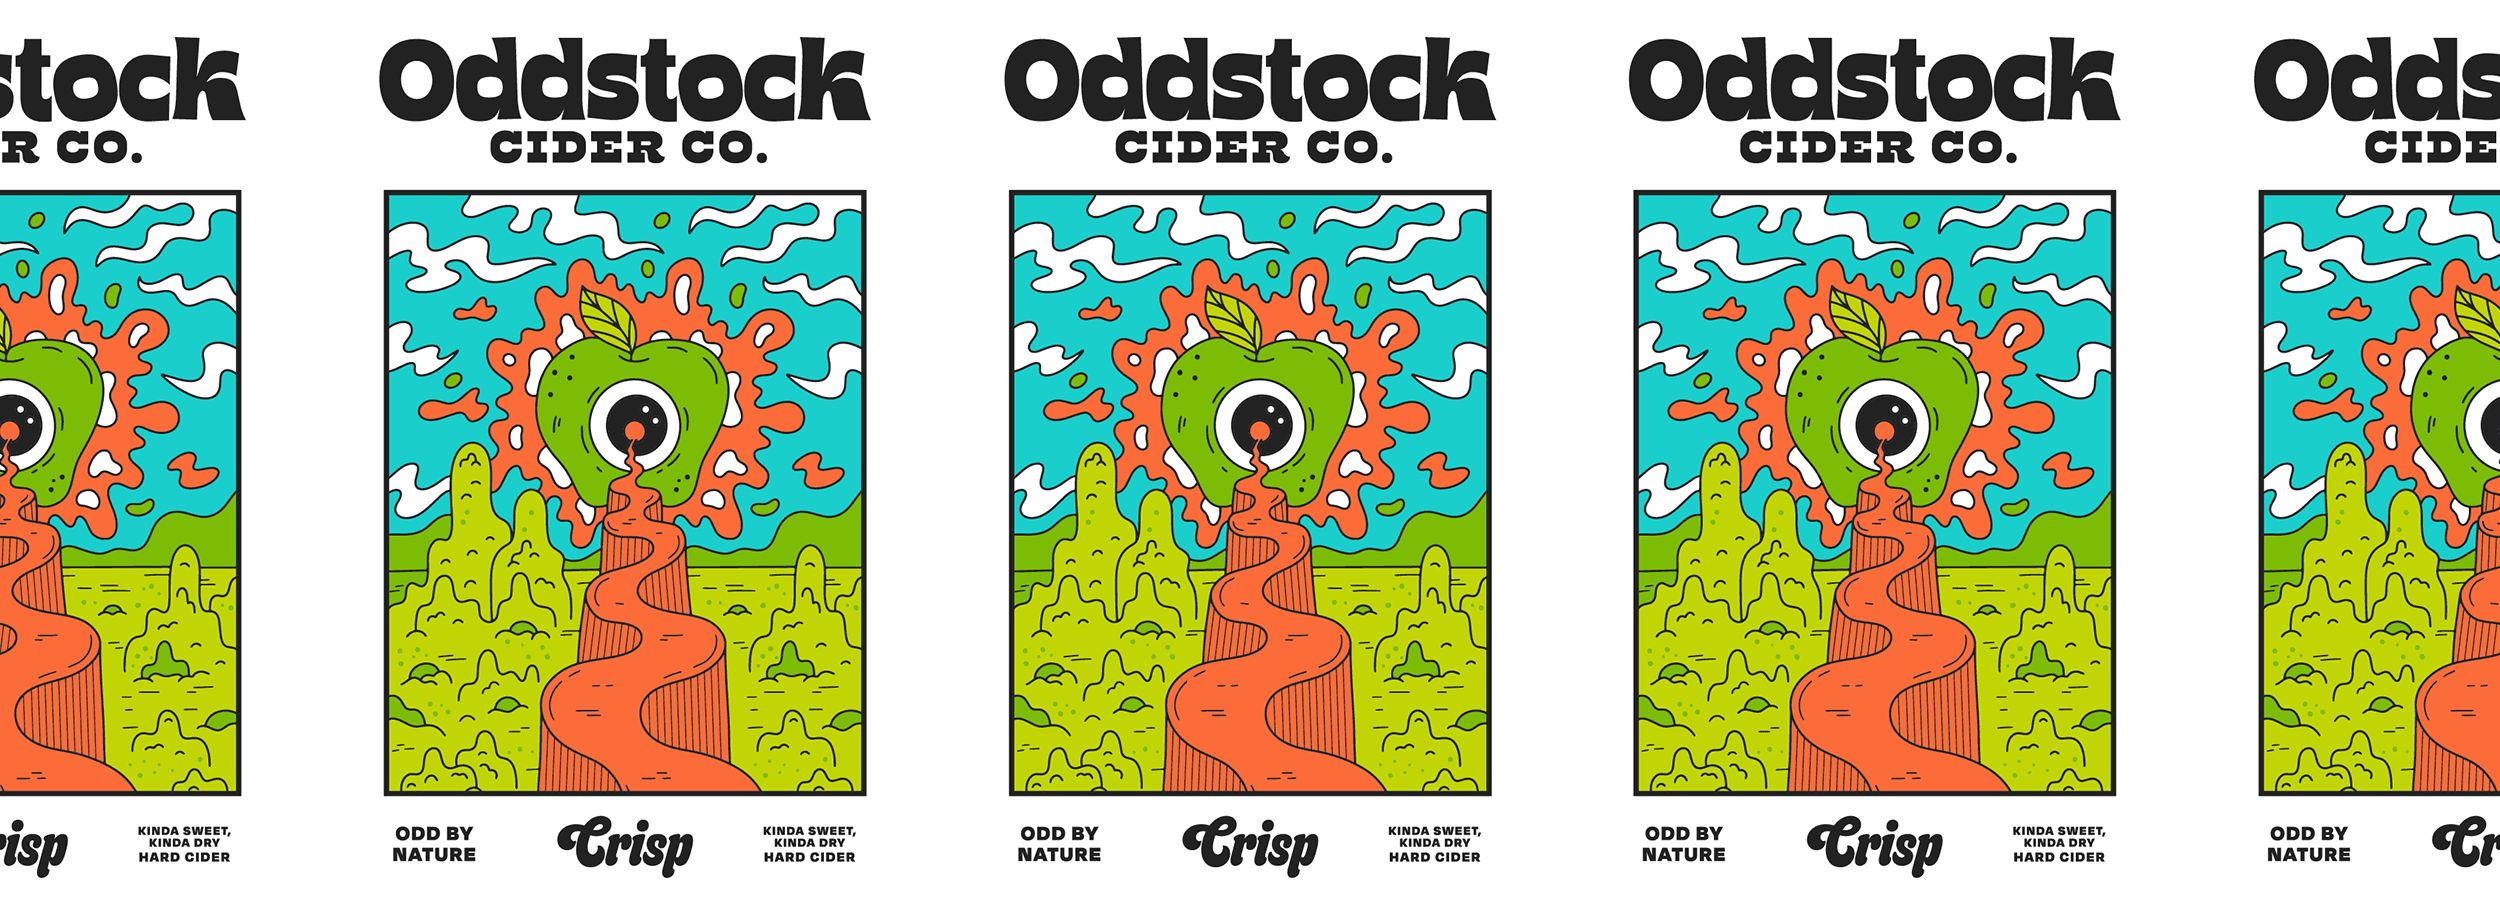 Oddstock Posters